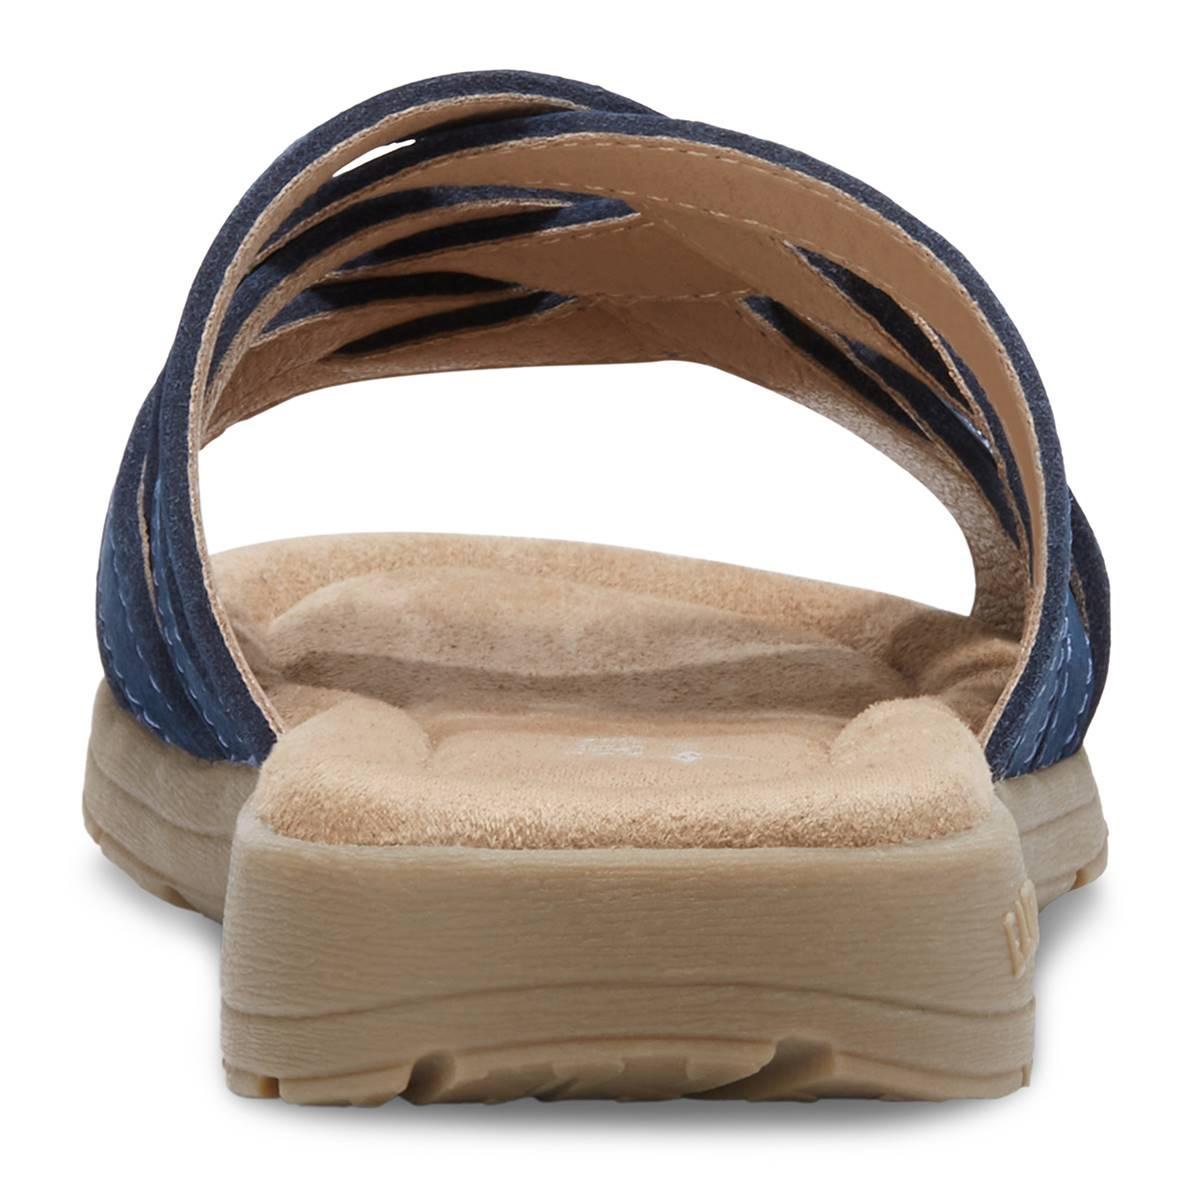 Eastland Hazel Womens Leather Slide Sandals Blue Product Image